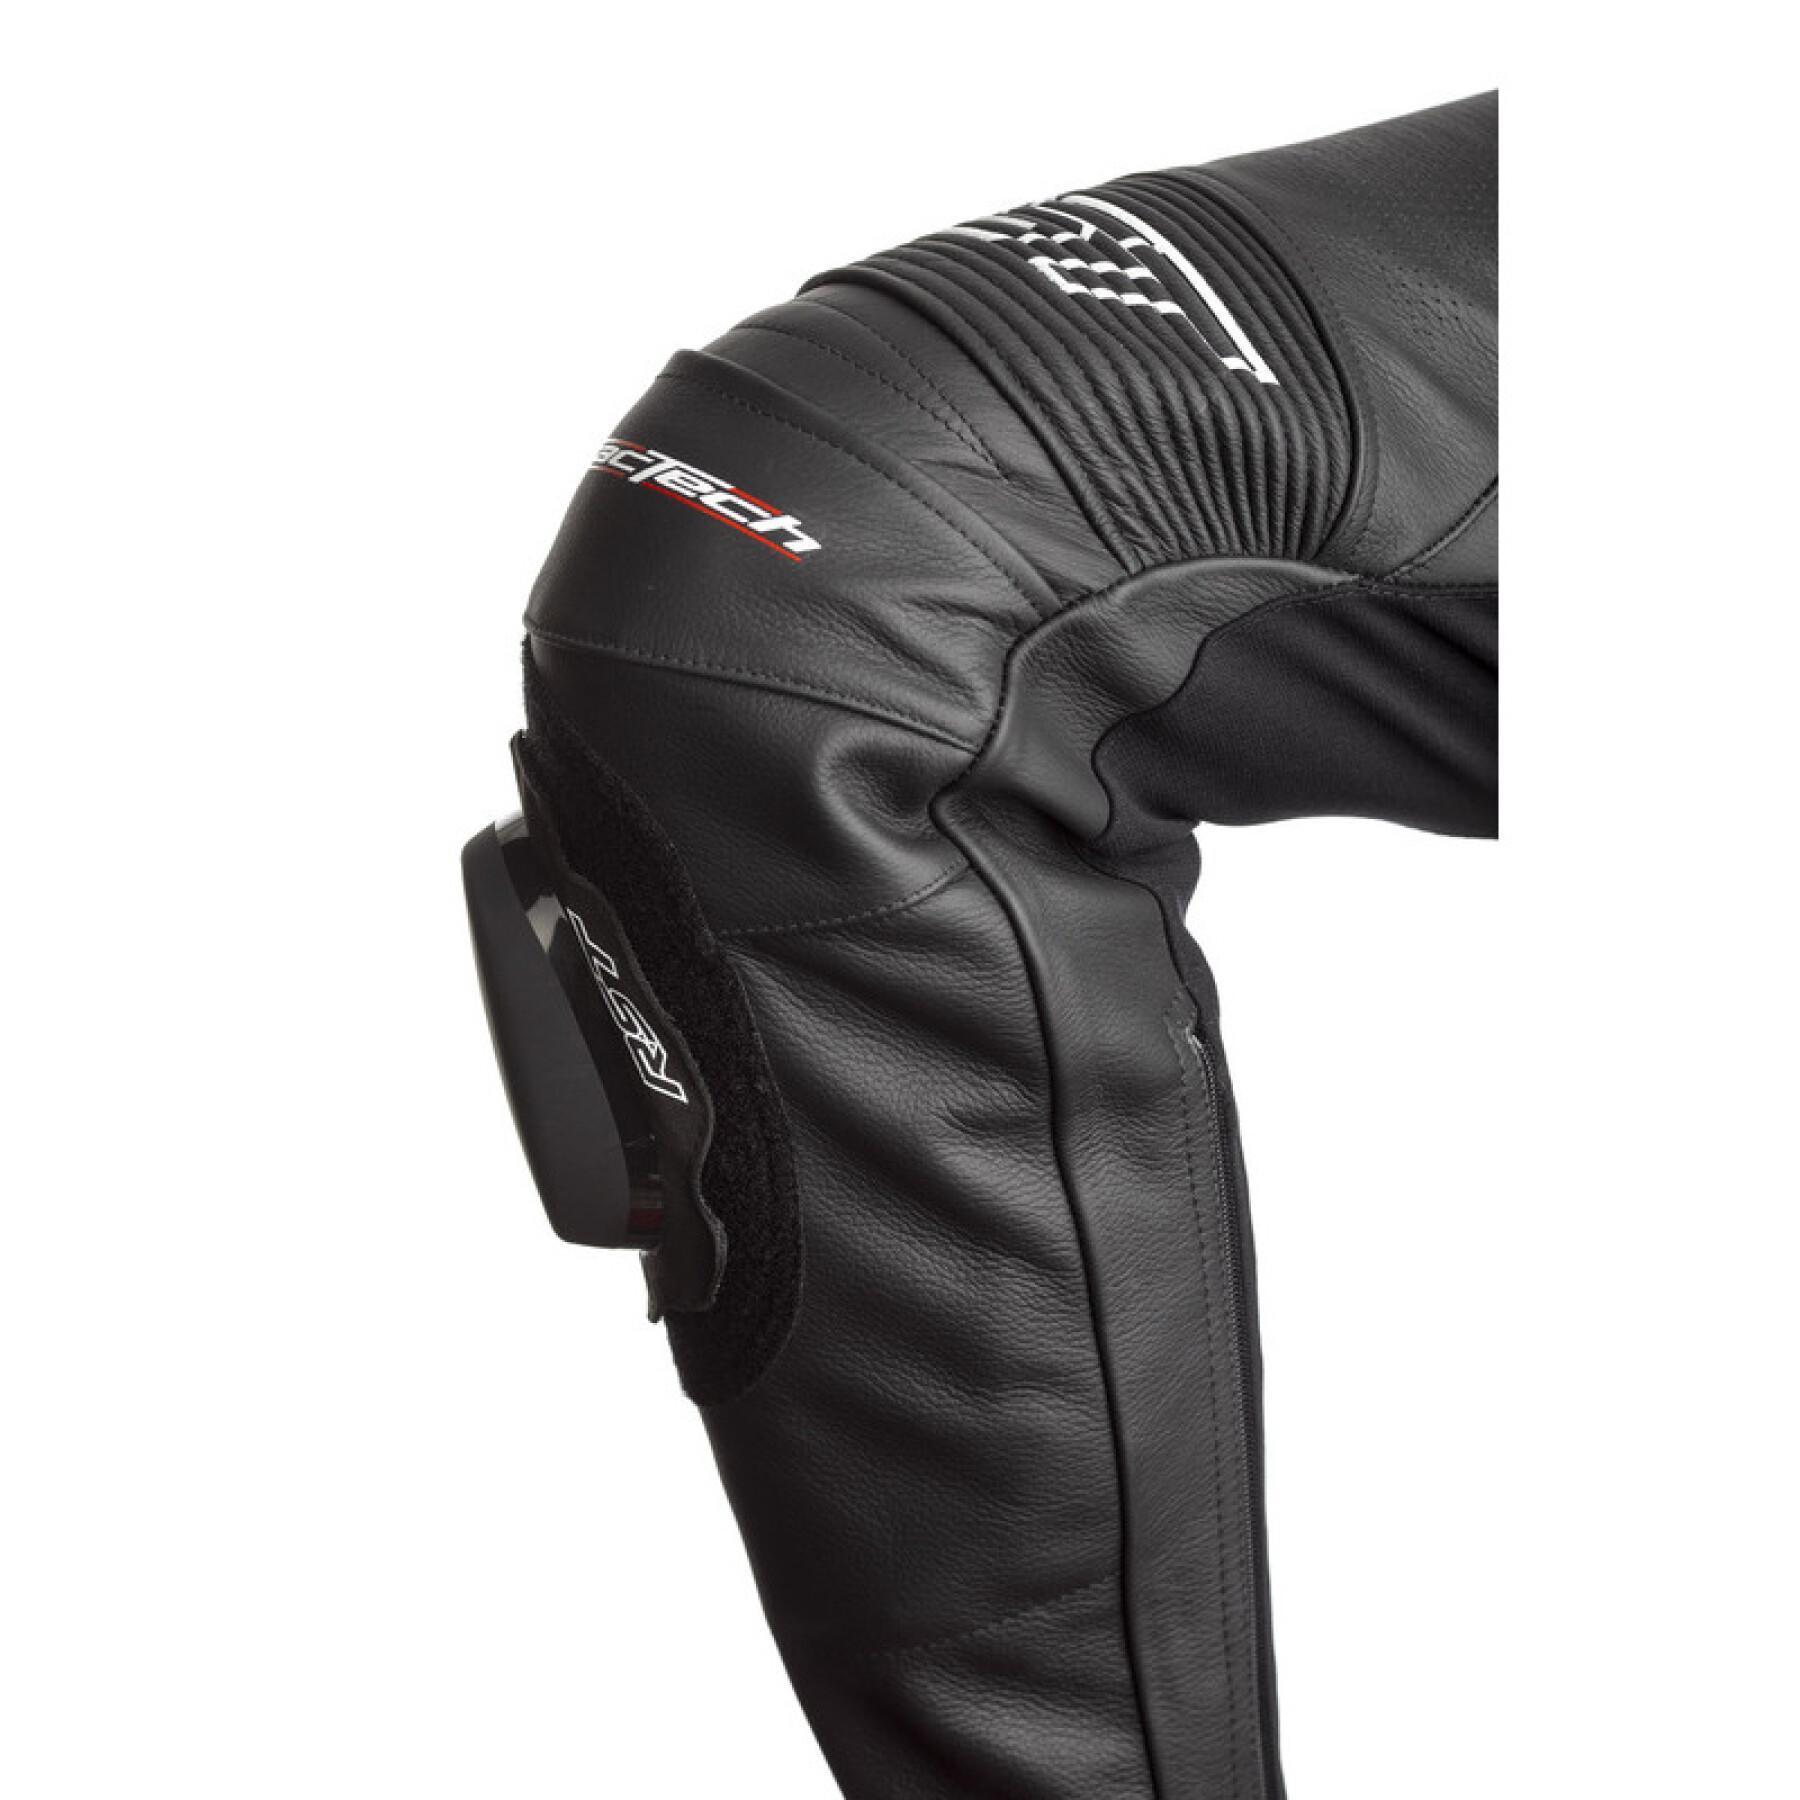 Pantalones de moto de cuero RST Tractech EVO 4 CE